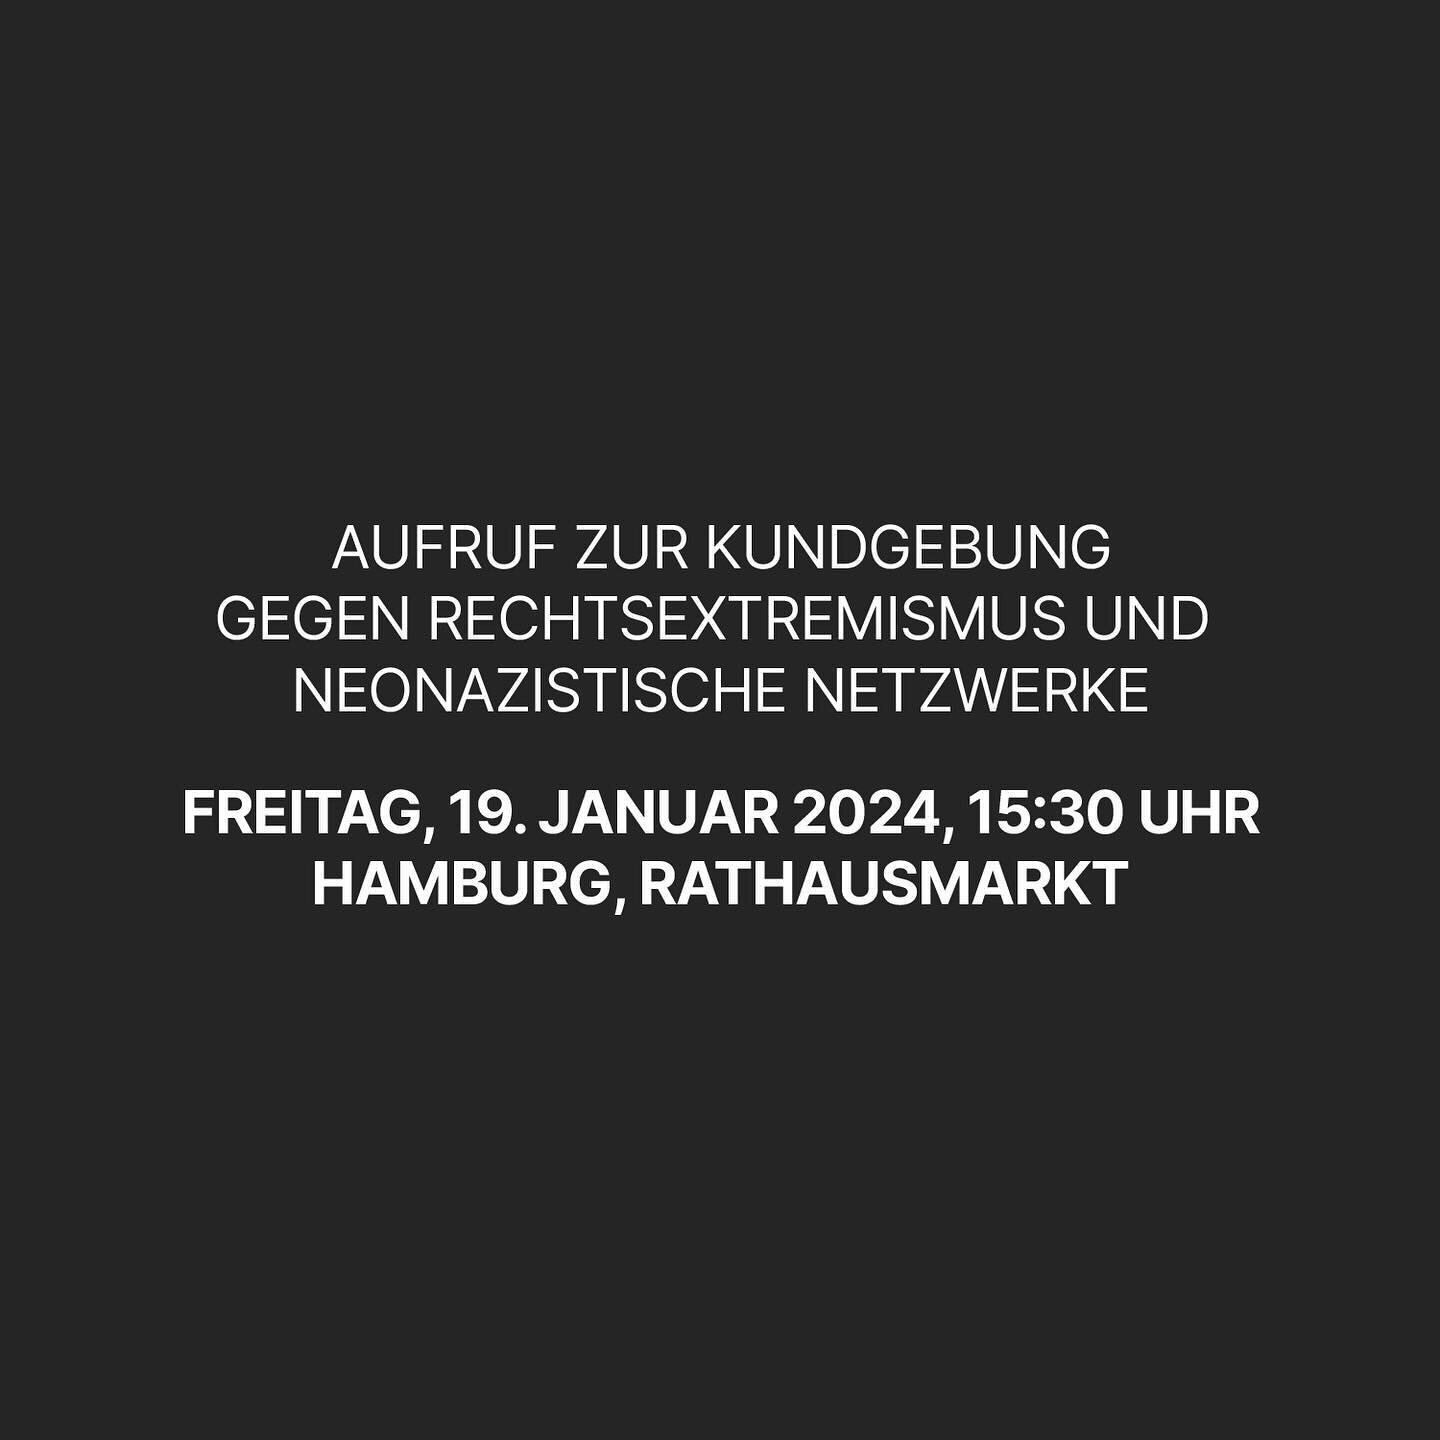 Aufruf zur Kundgebung gegen Rechtsextremismus und neonazistische Netzwerke &ndash; seid dabei!

Freitag, 19. Januar 2024, 15:30 | Hamburg, Rathausmarkt